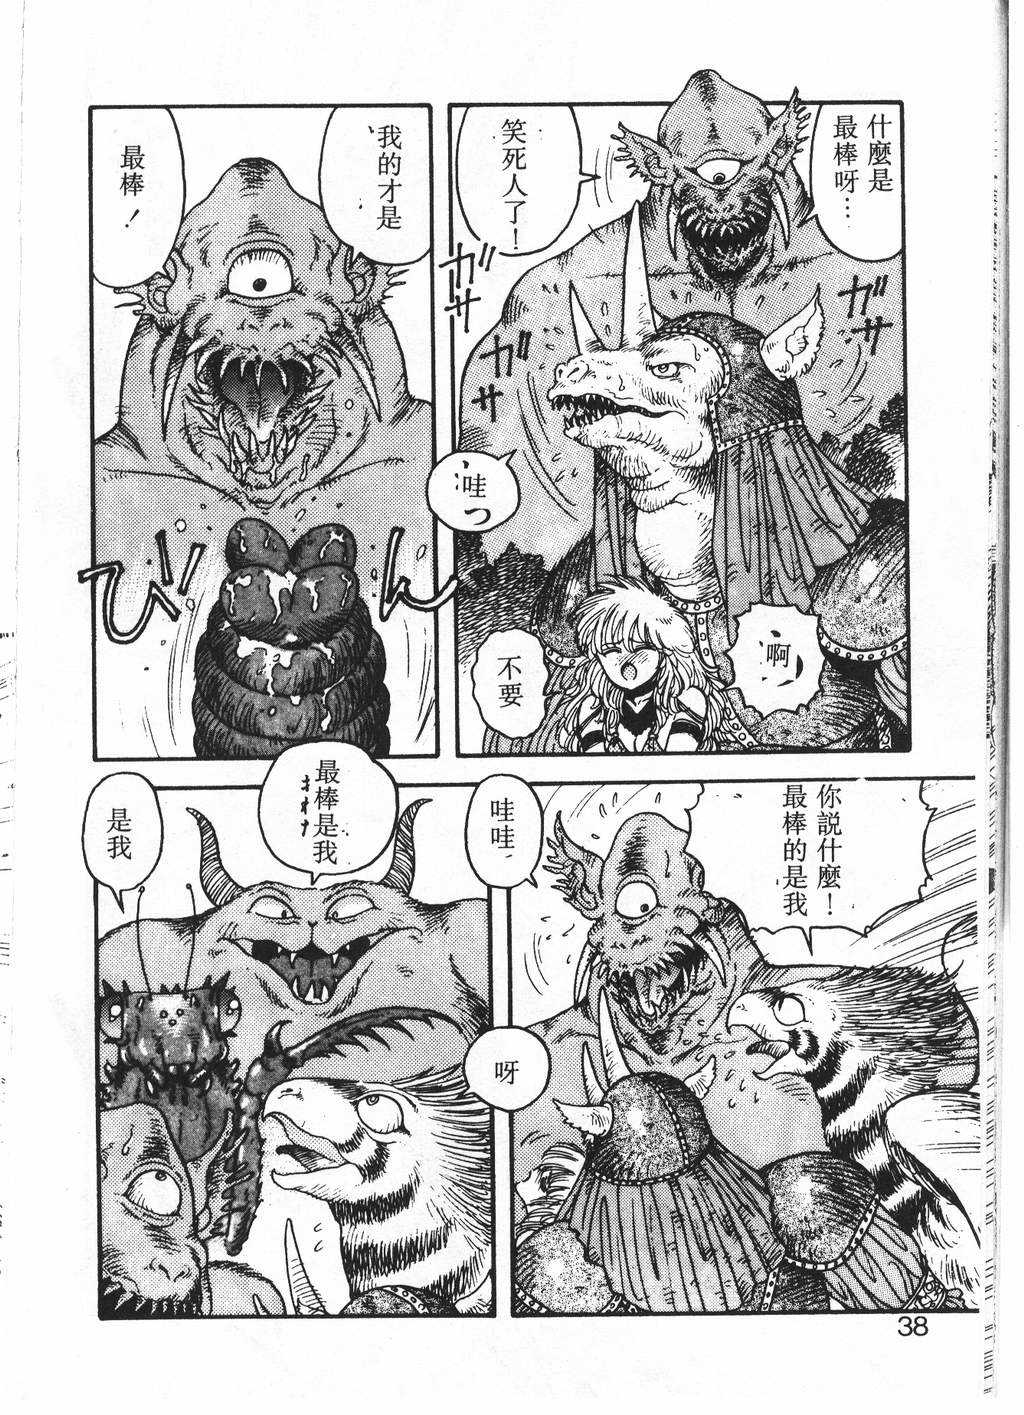 [唯登詩樹] Princess Quest Saga (Chinese) 